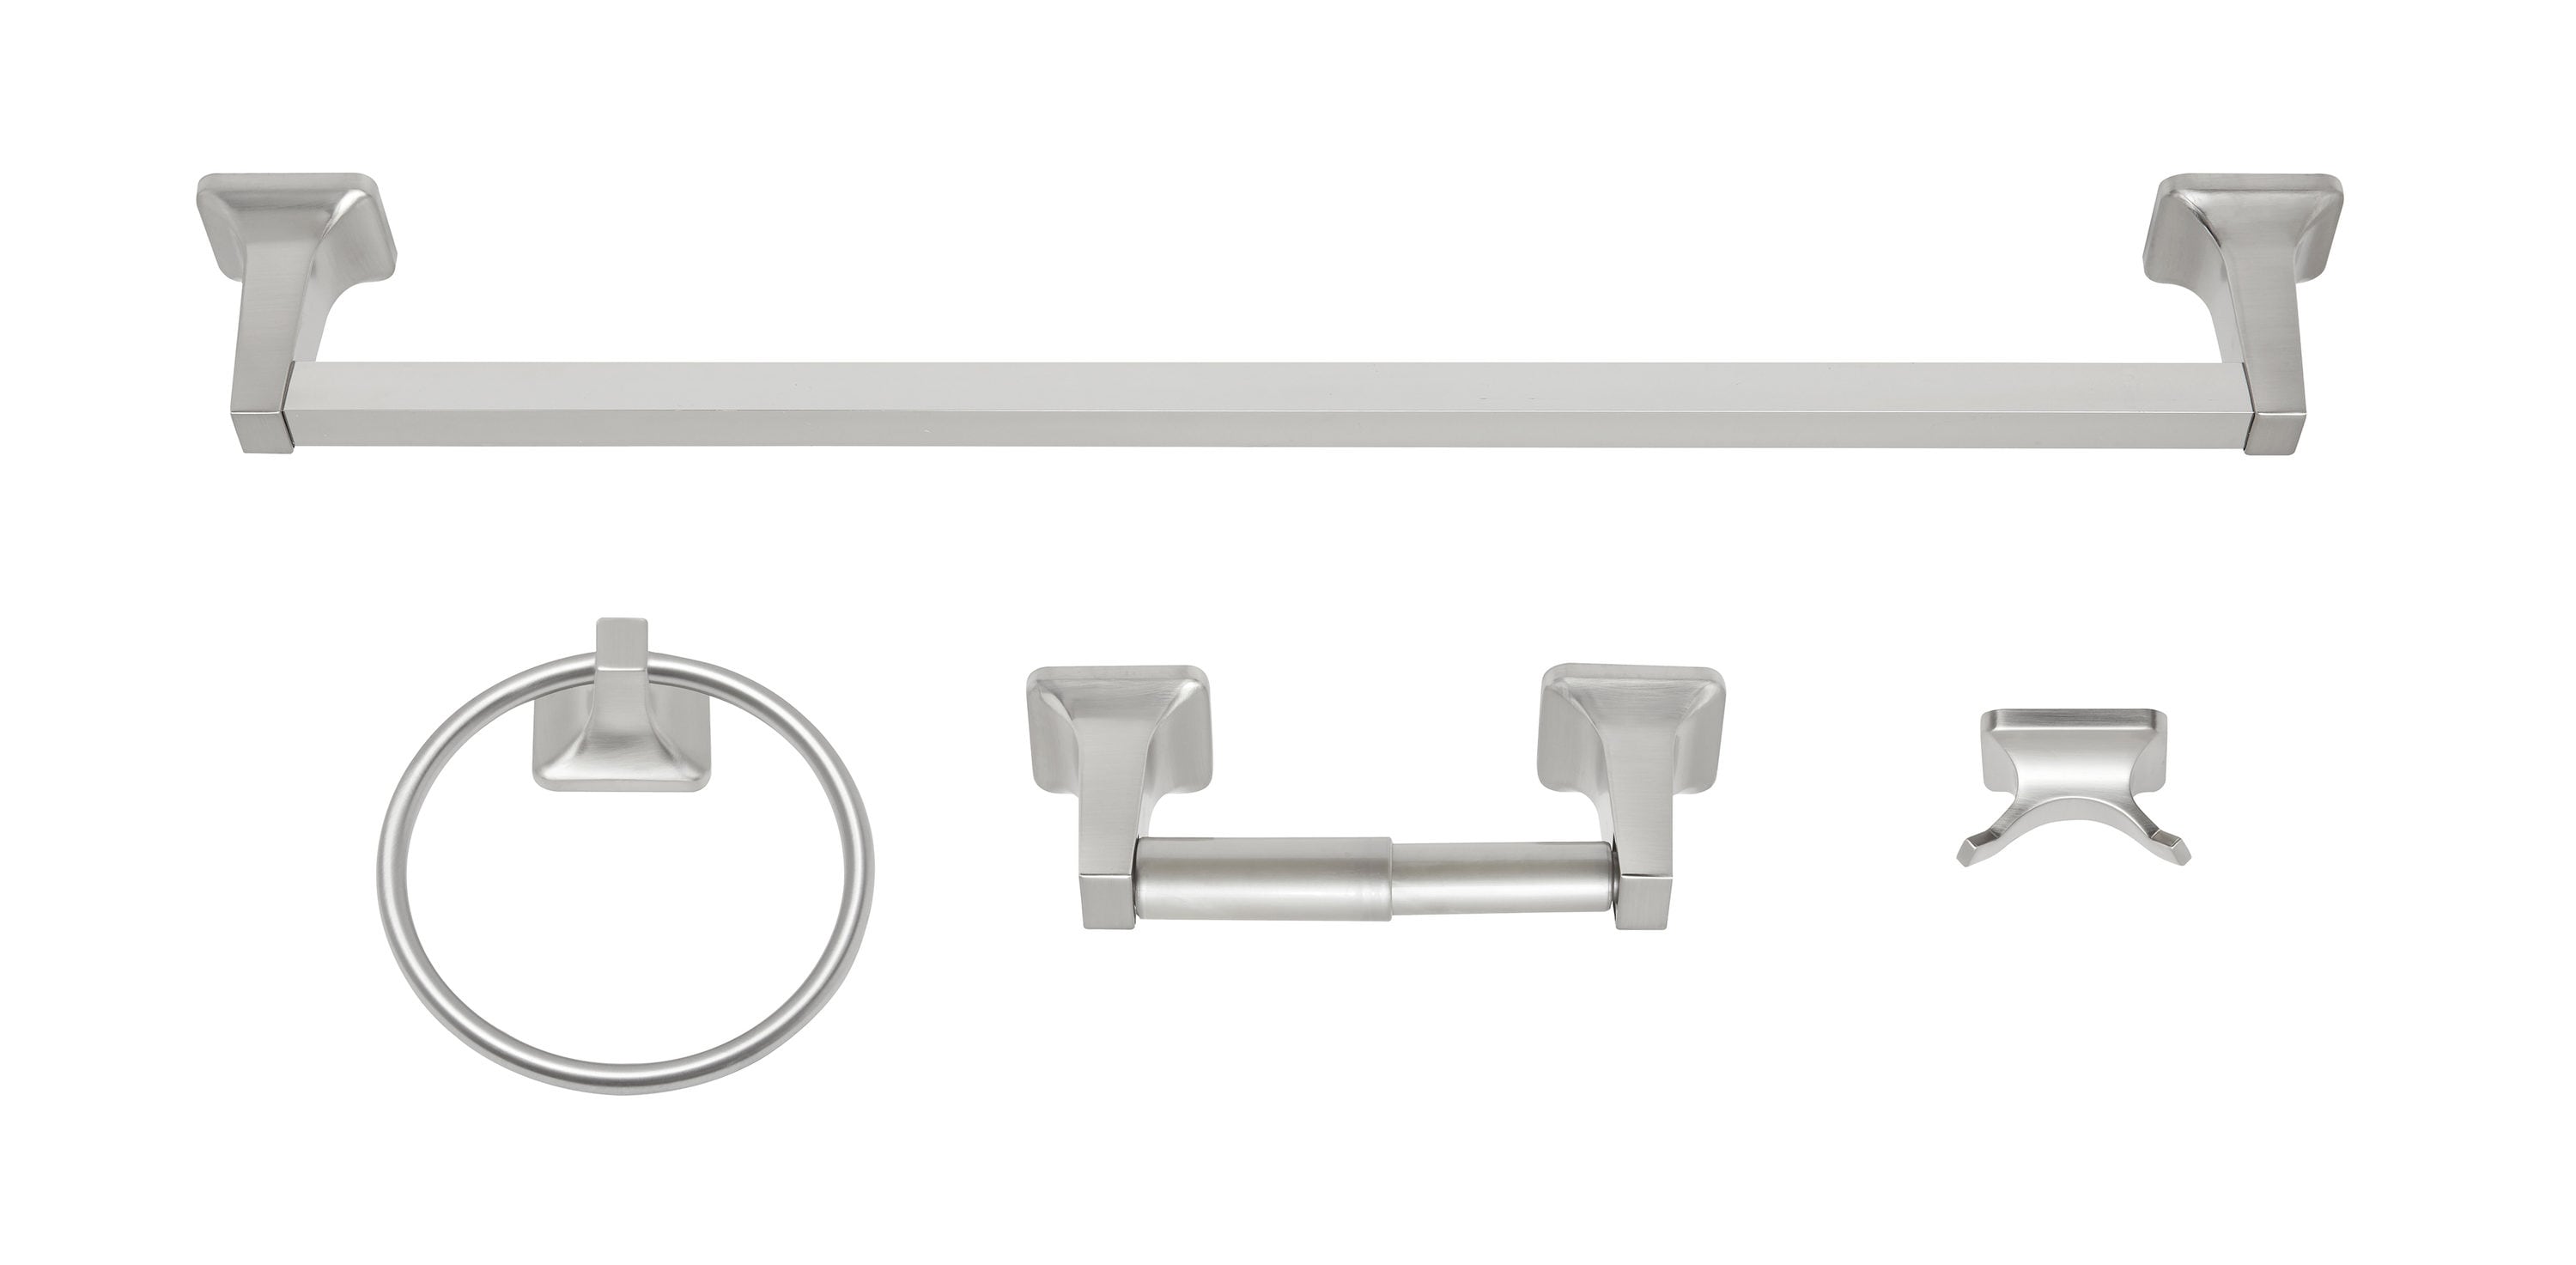 Cilee 10 Piece Brushed Nickel Bathroom Accessories Set, 16 inch Brushed  Nickel Bathroon Hardware Set Towel Bar Ring Toilet Paper